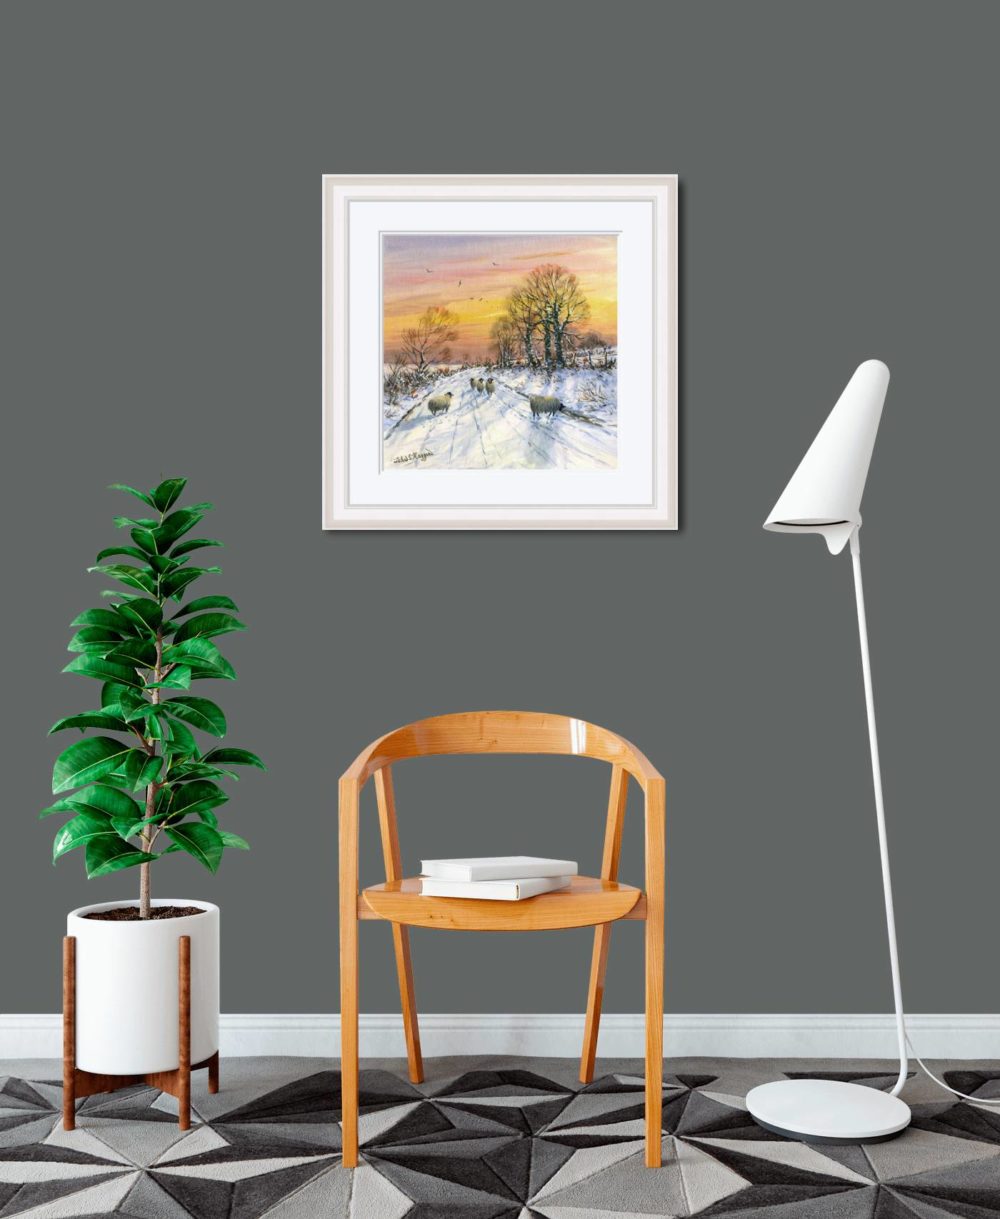 Warm Winter Sky Print (Medium) In White Frame In Room